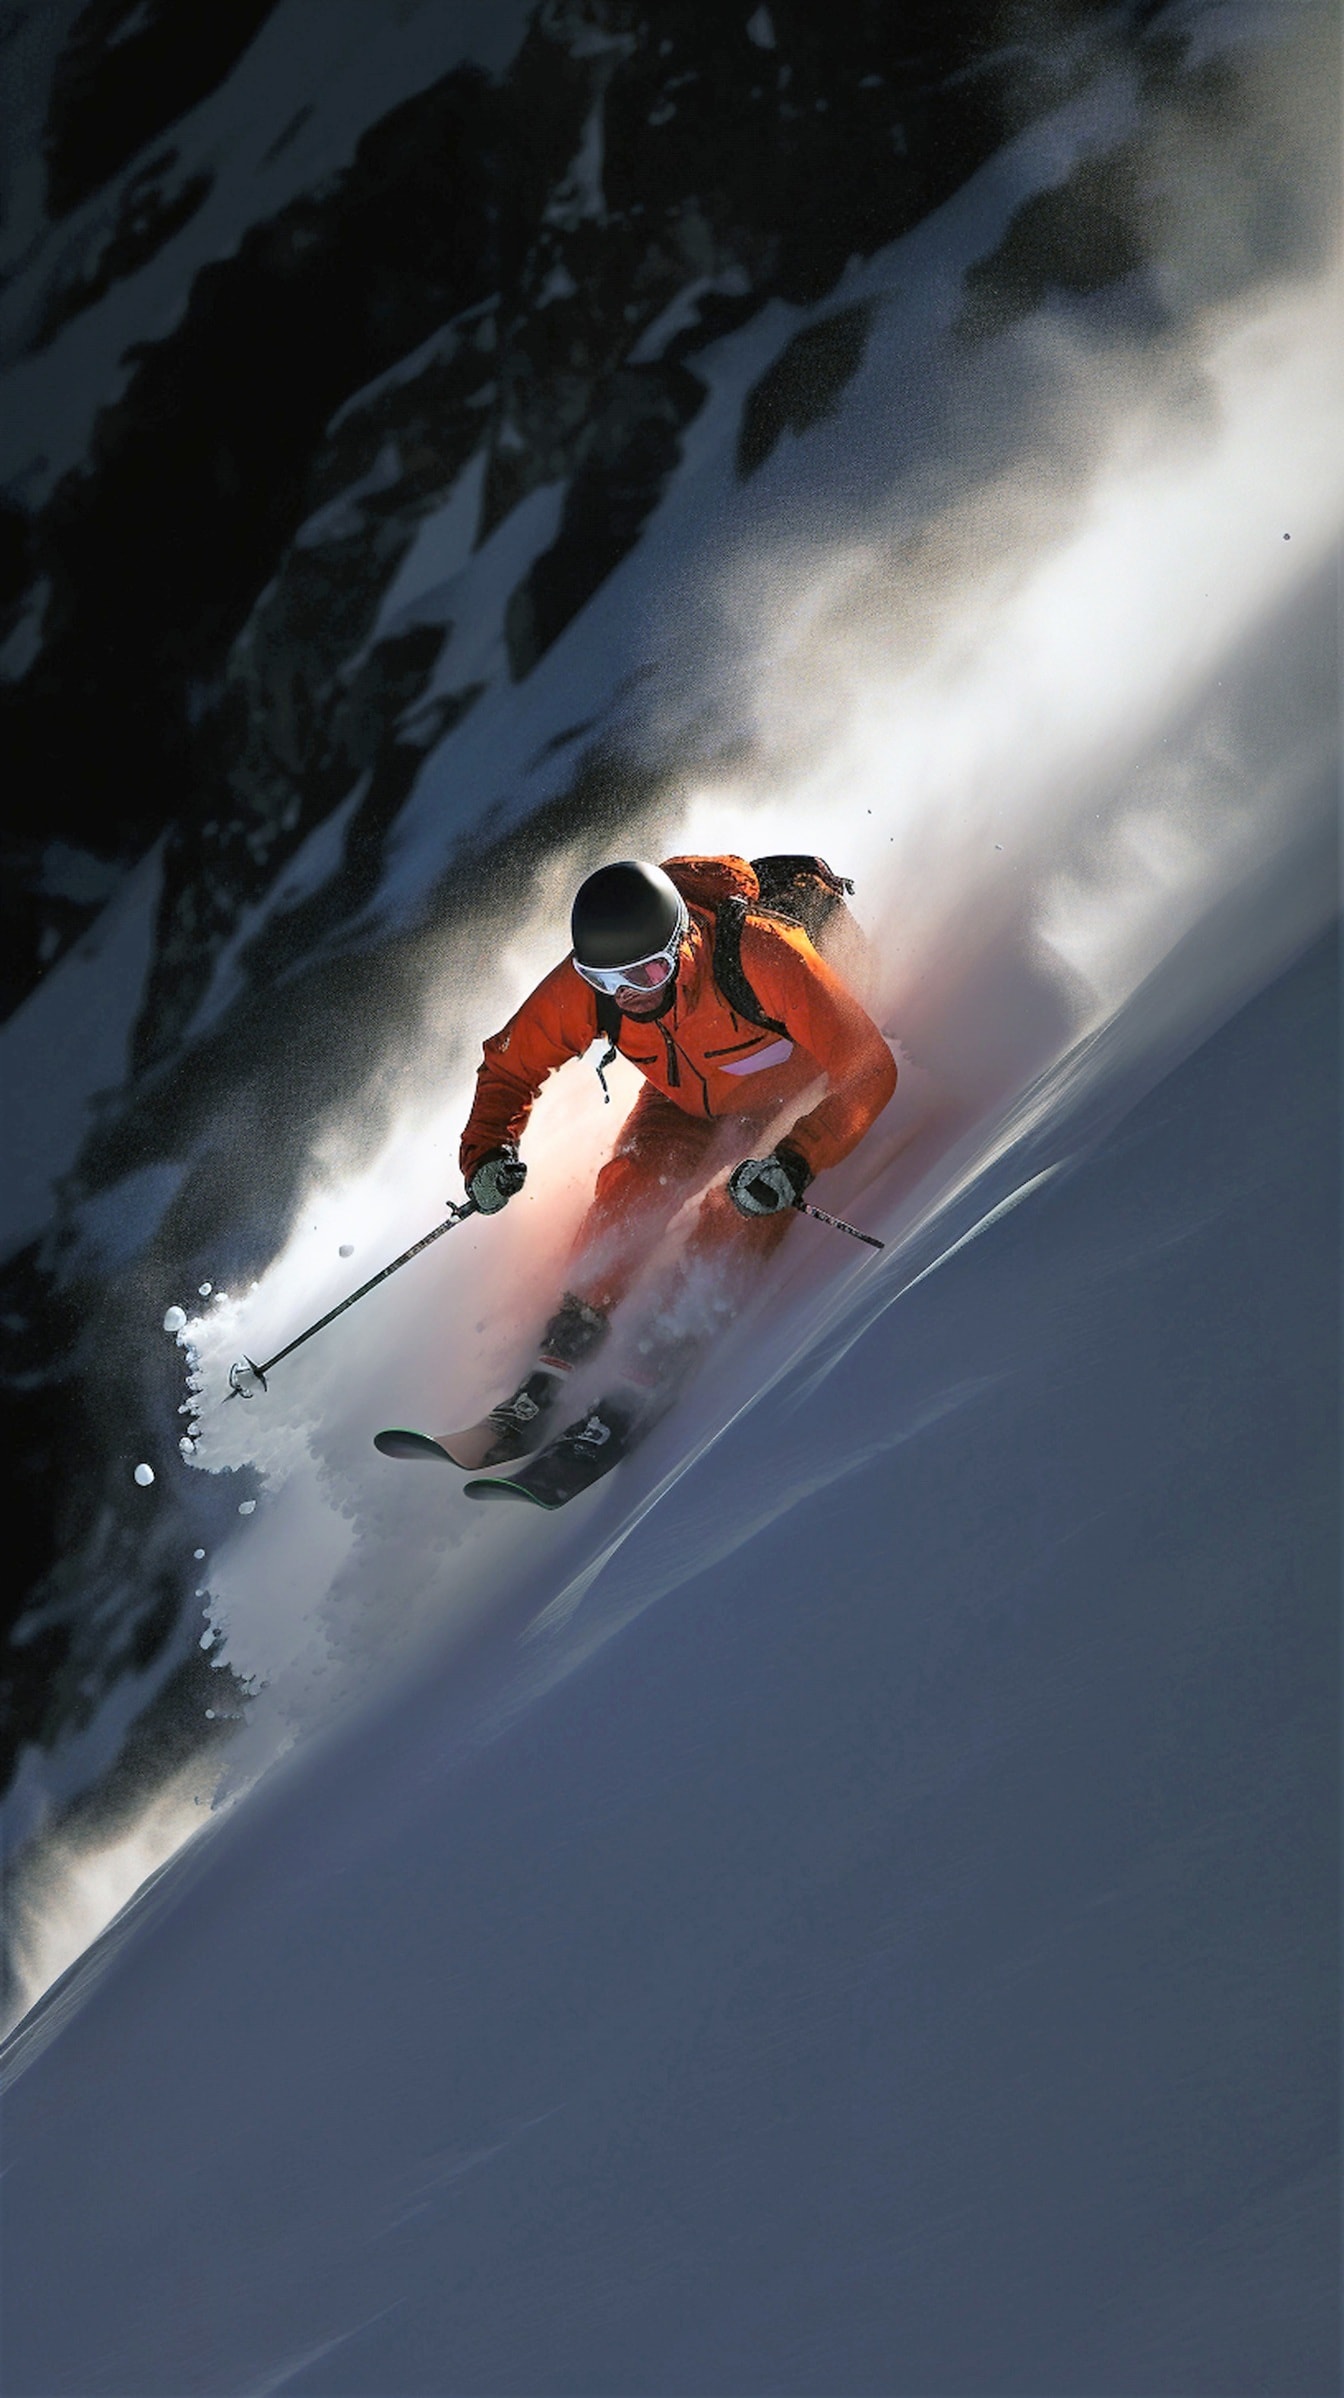 Skieur extrême skiant sur un sommet enneigé